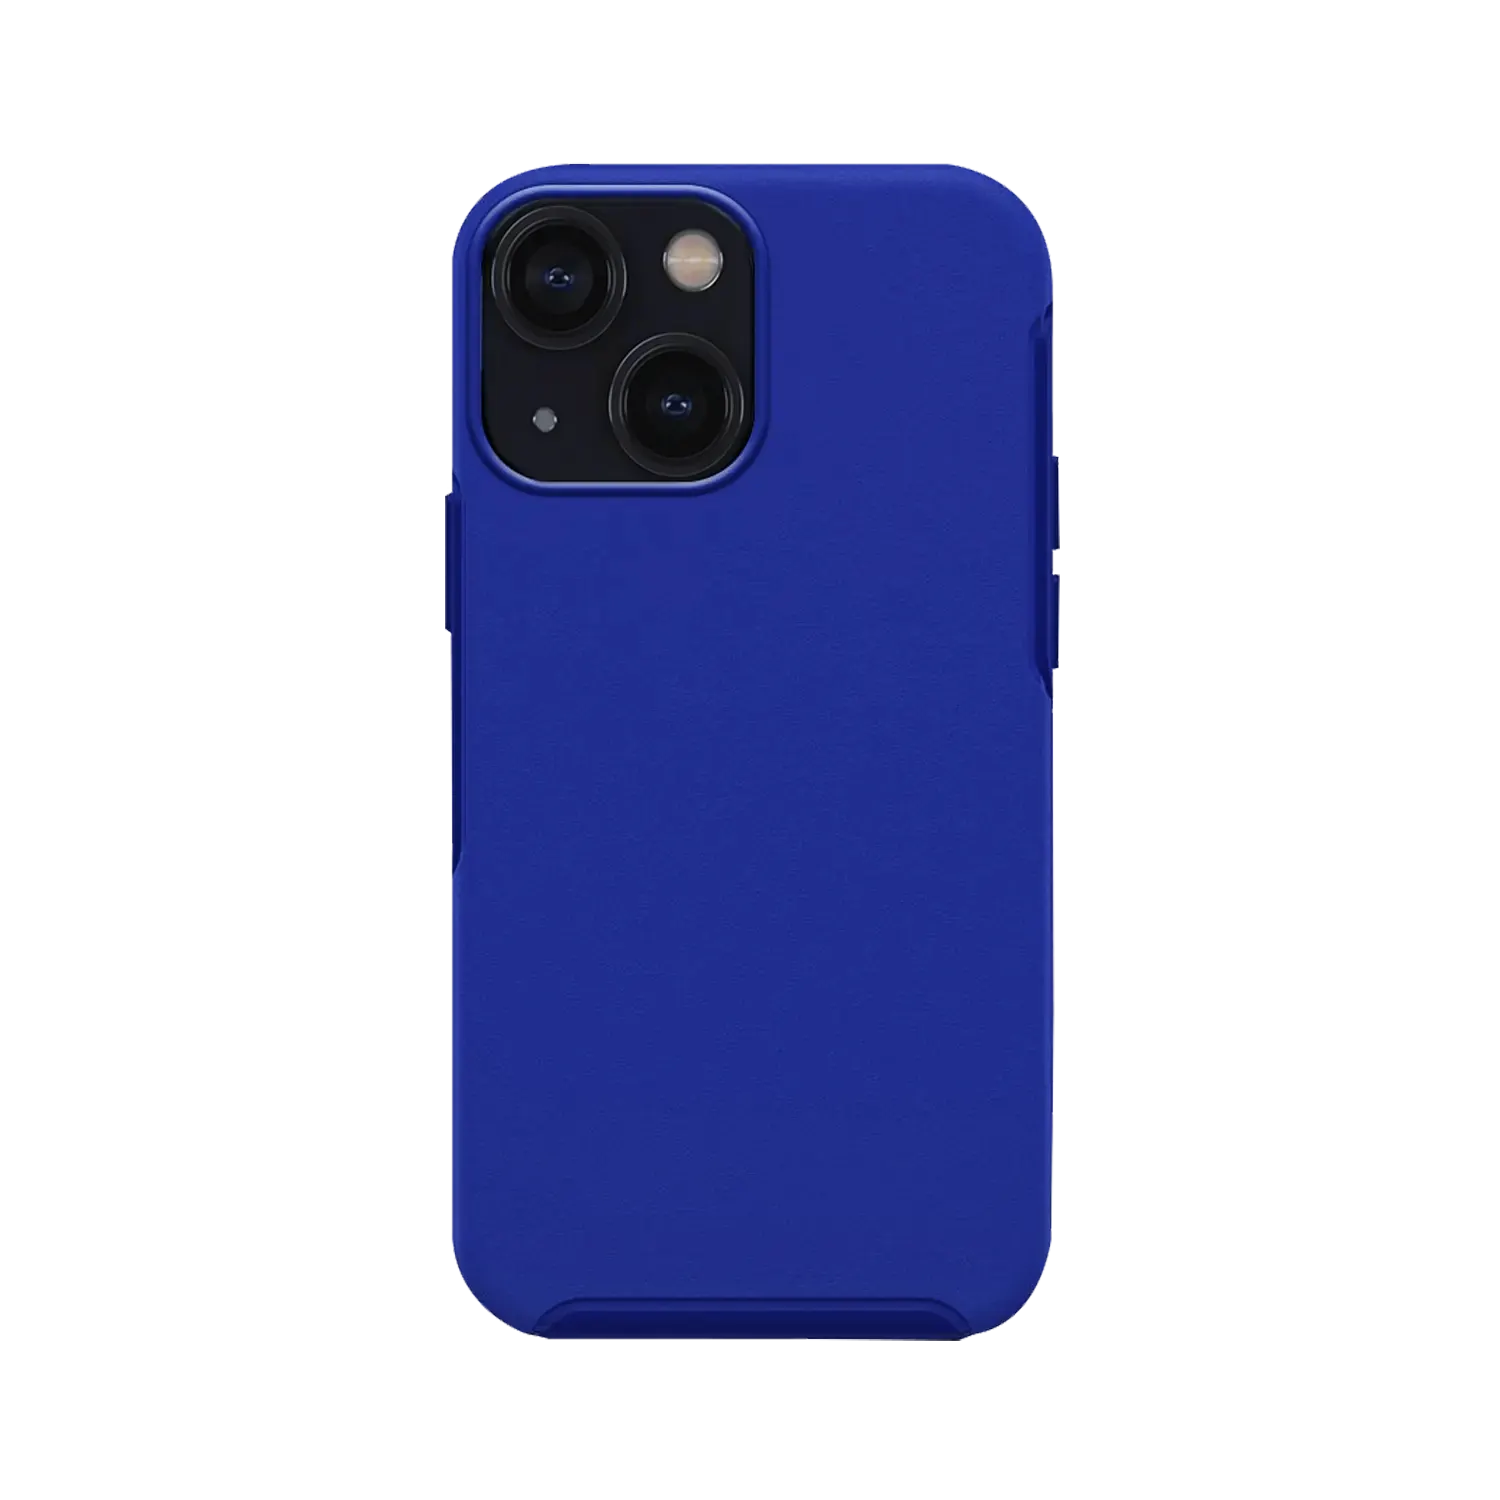 symmetry-iphone-12-case-blue